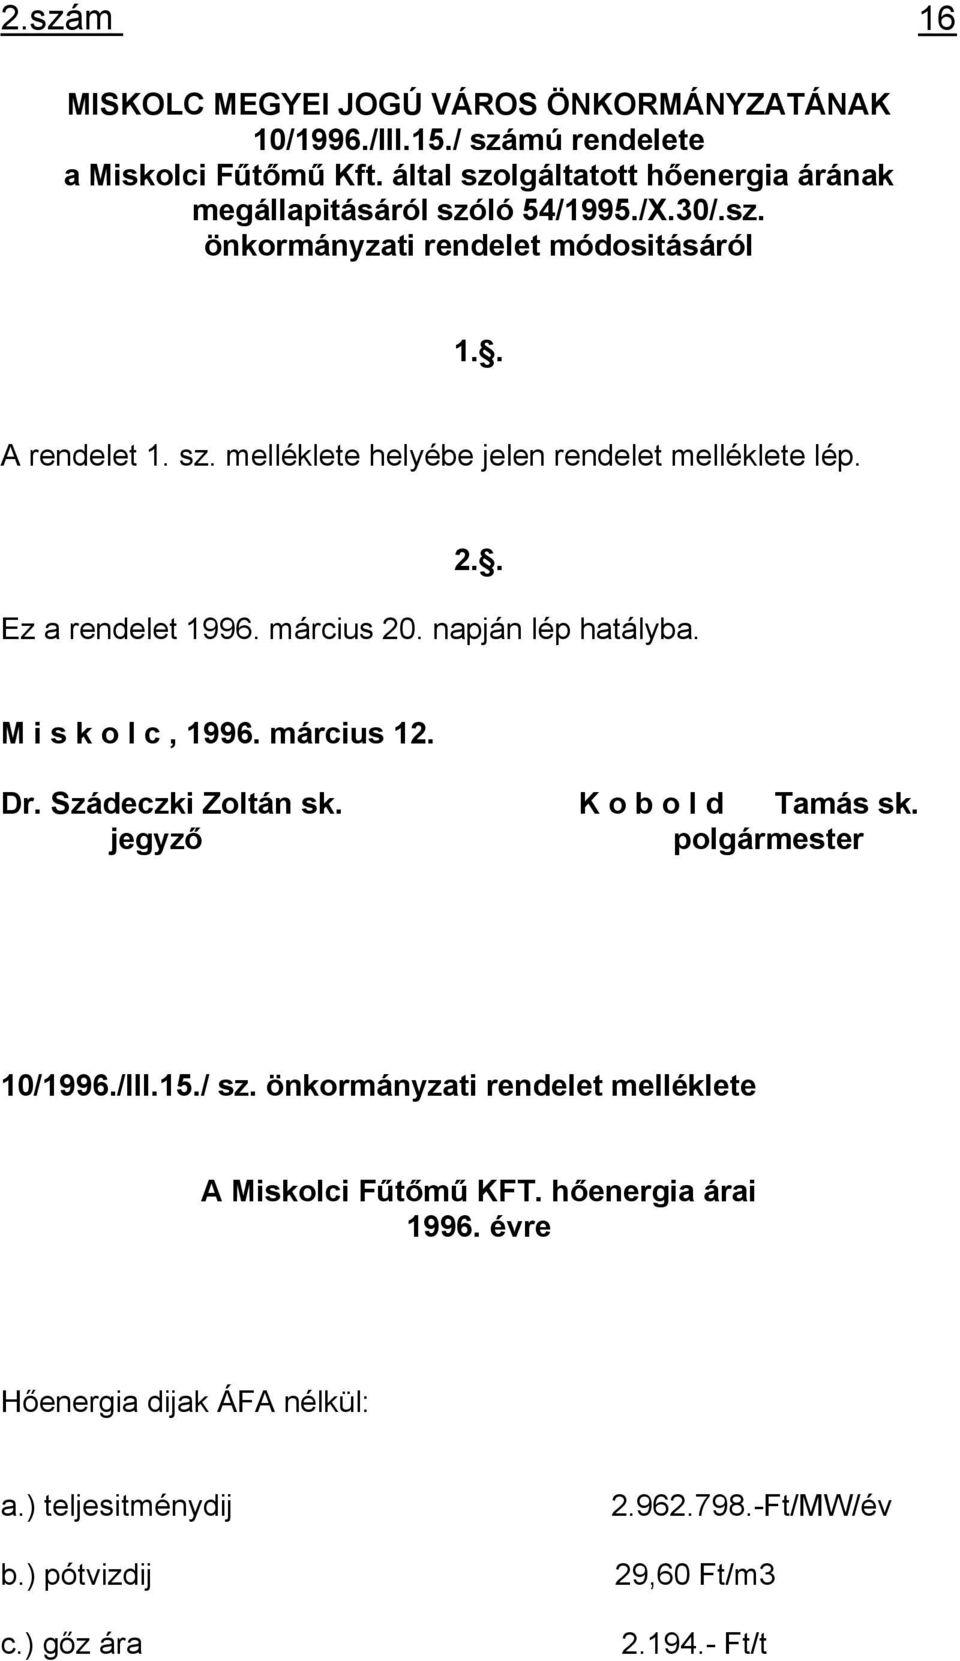 2.. Ez a rendelet 1996. március 20. napján lép hatályba. M i s k o l c, 1996. március 12. Dr. Szádeczki Zoltán sk. K o b o l d Tamás sk. jegyző polgármester 10/1996./III.